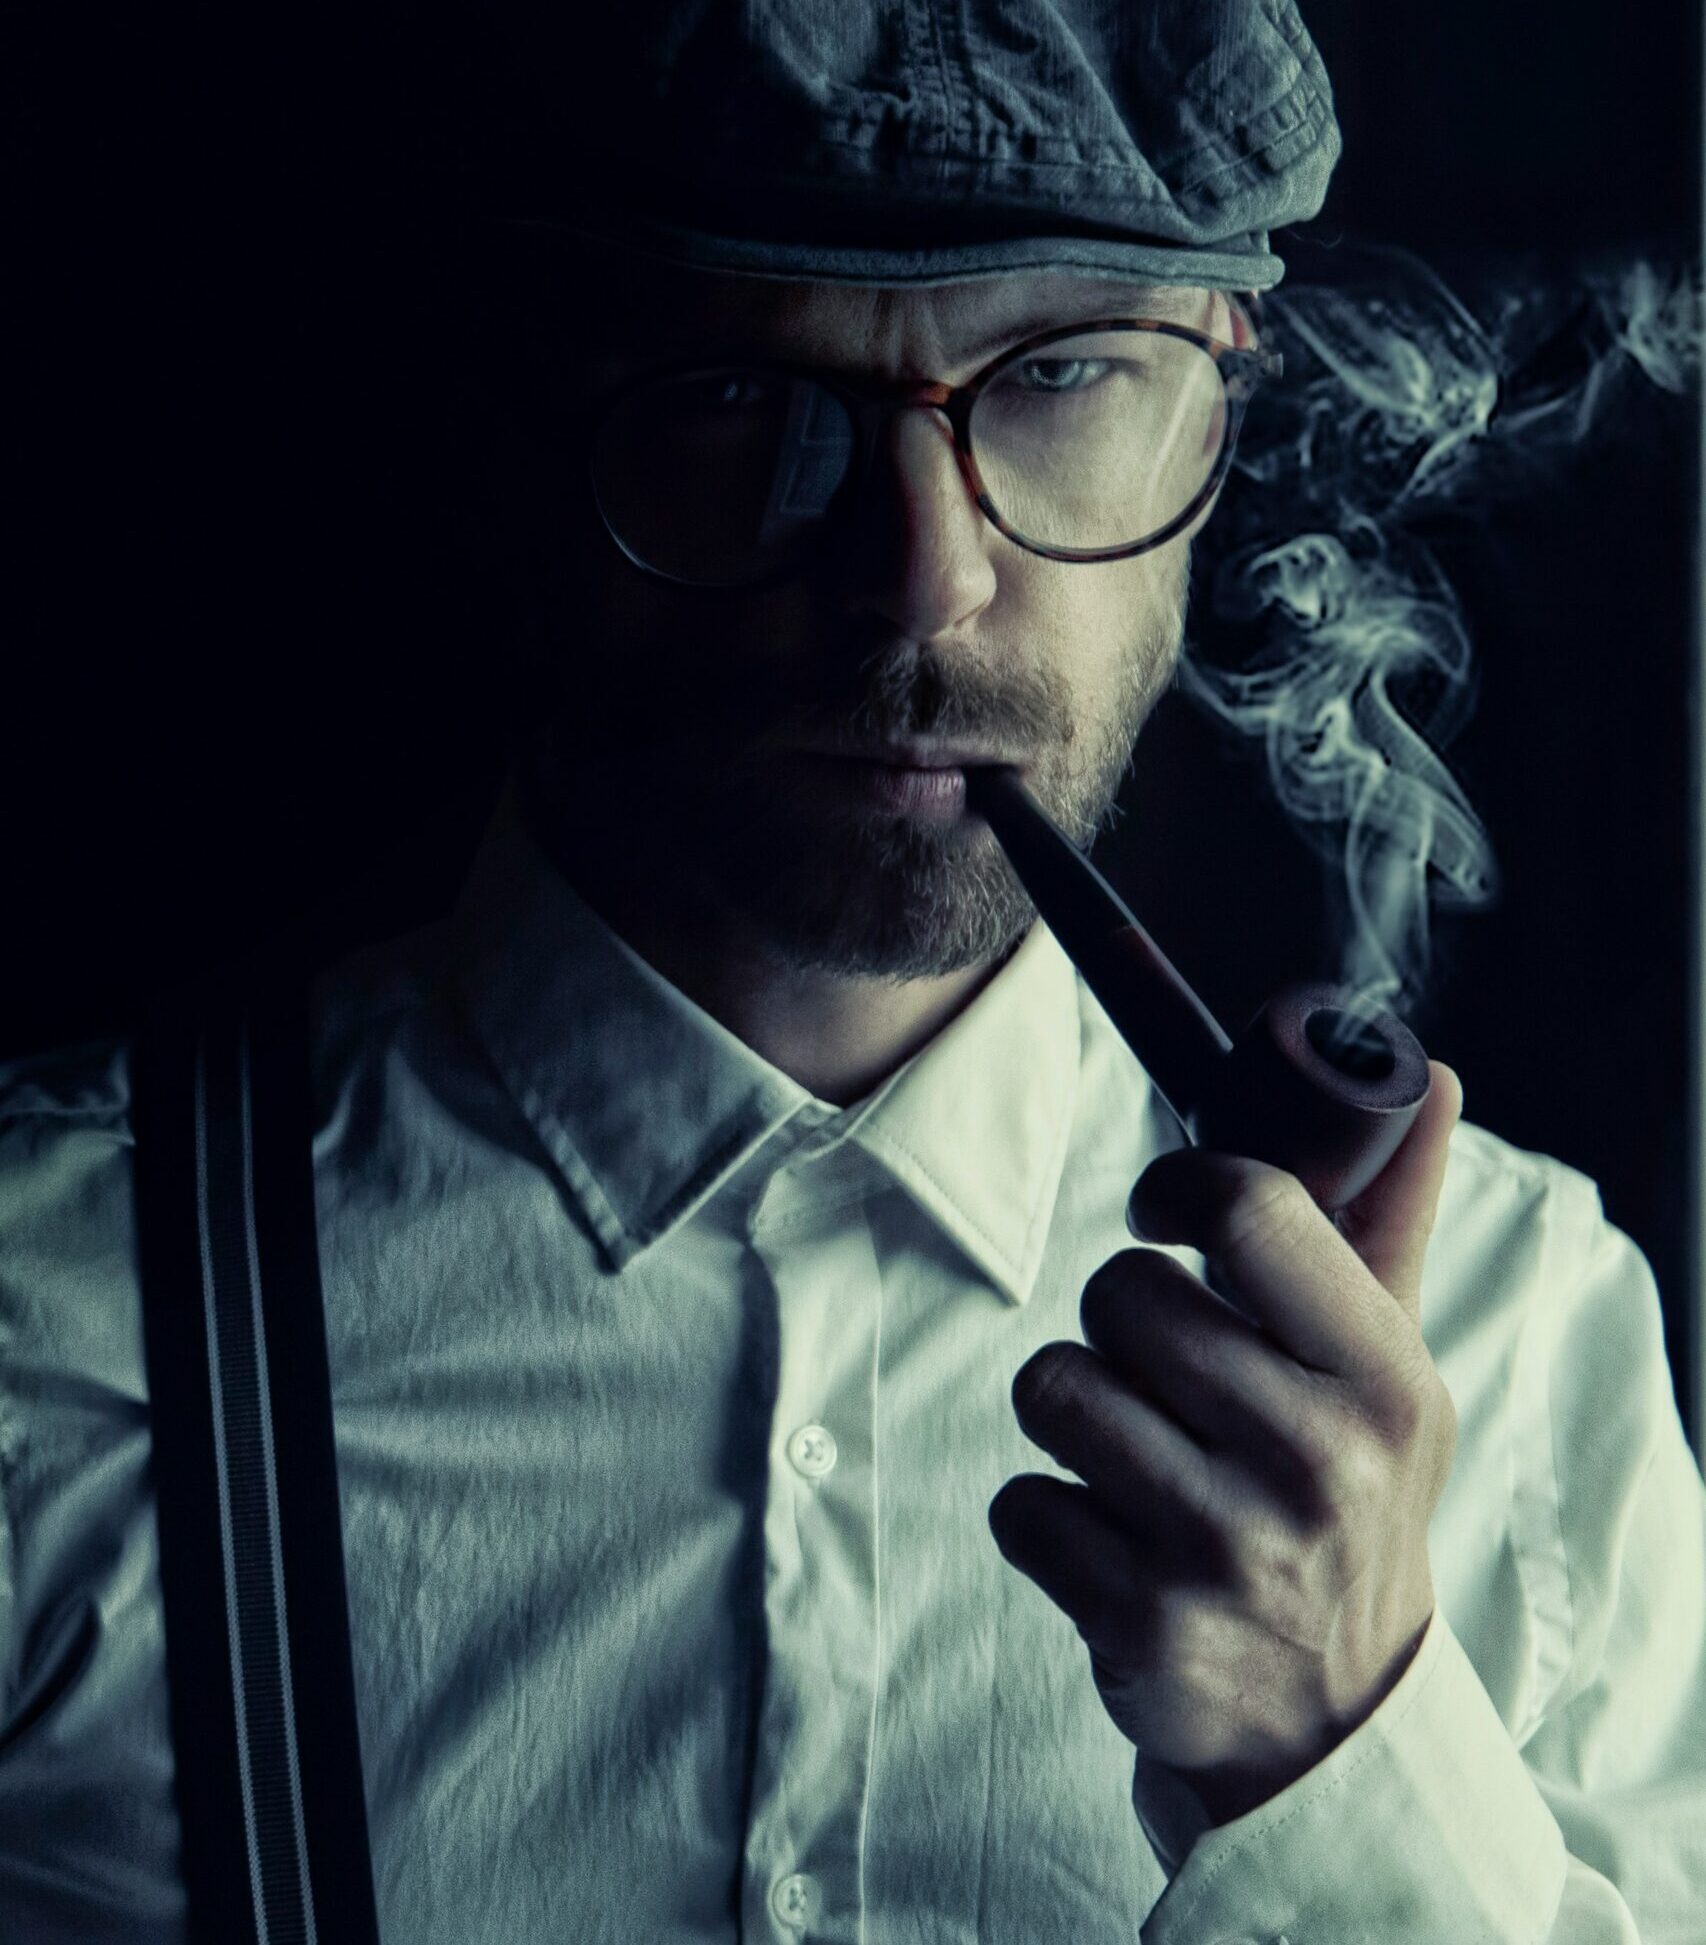 Ein Bild von einem Detektiv aus einem Film